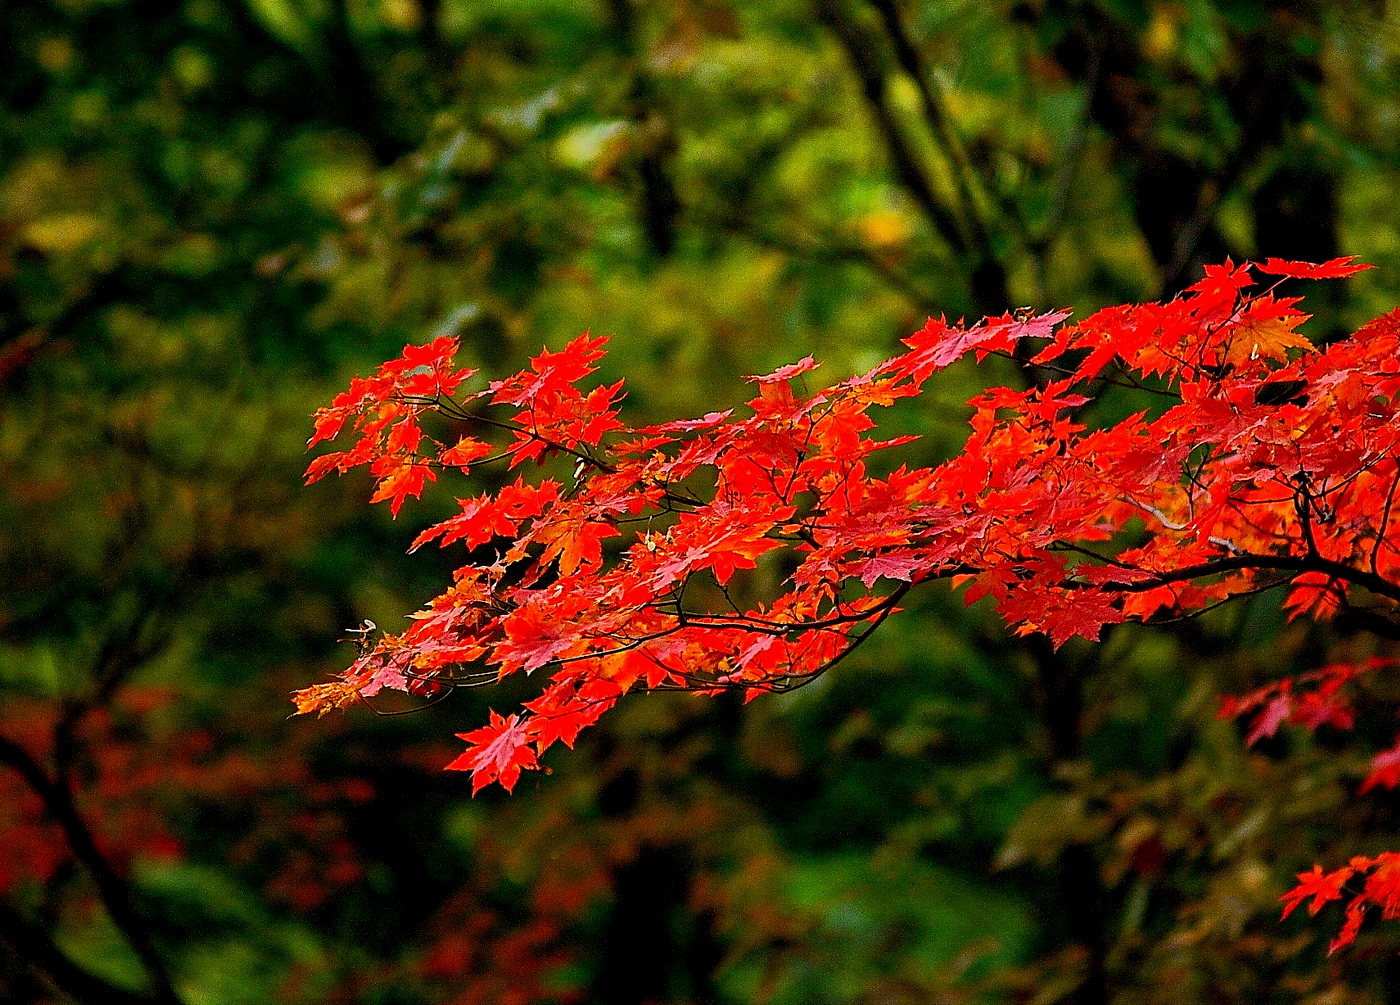 壁纸1280×1024壁纸 秋天红色的枫叶图片壁纸,浓浓秋色-秋天树叶摄影壁纸图片-风景壁纸-风景图片素材-桌面壁纸